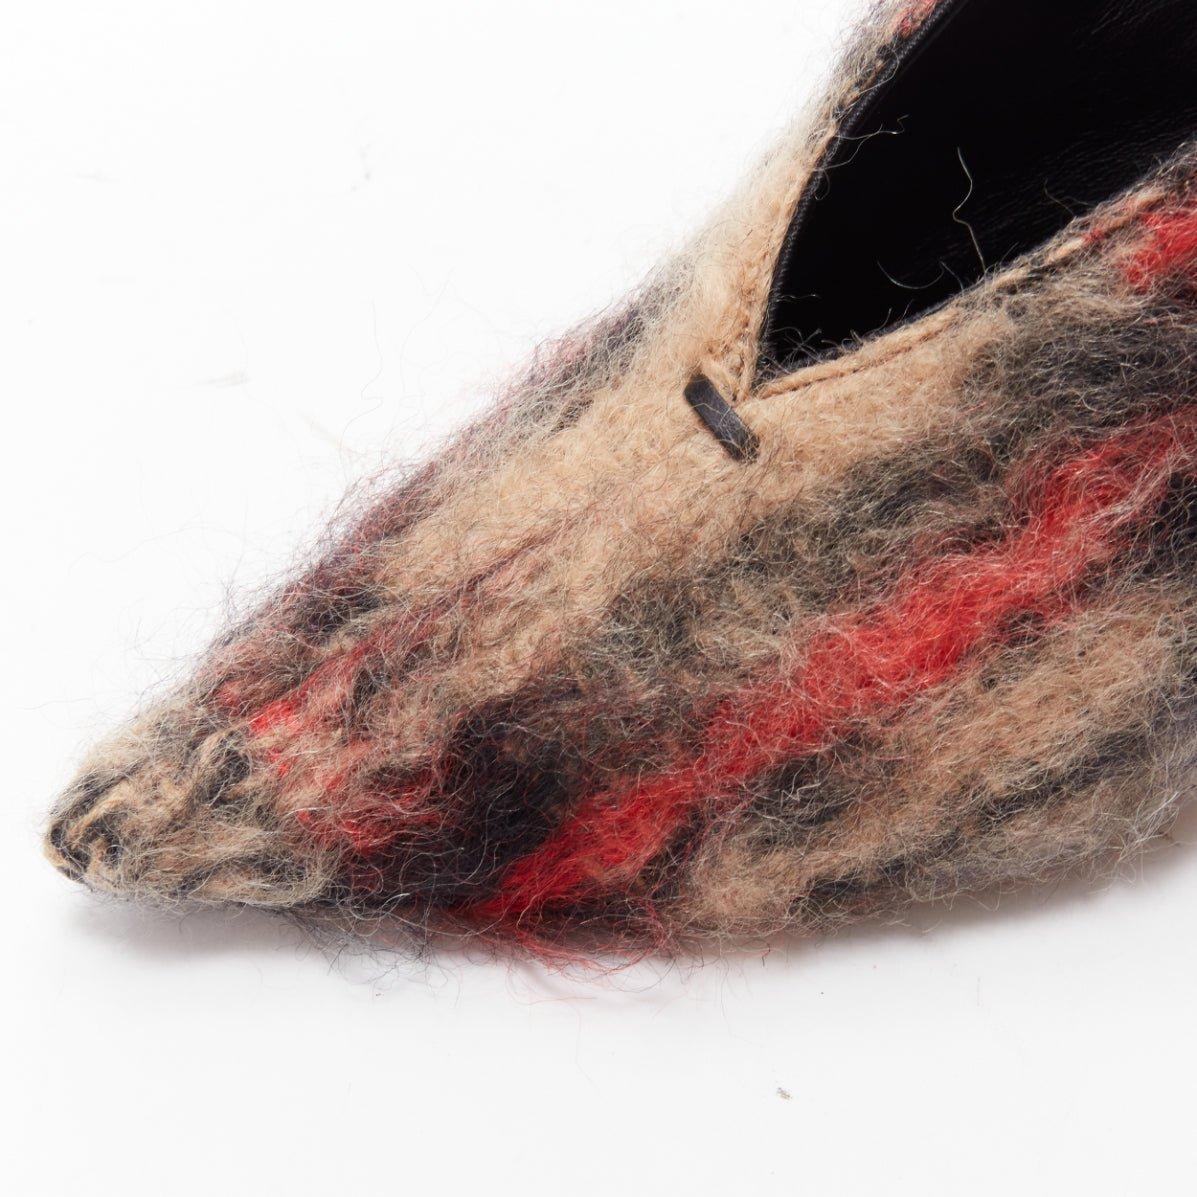 OLD CELINE Runway Phoebe Philo V Neck red black wool high heel pumps EU37 3